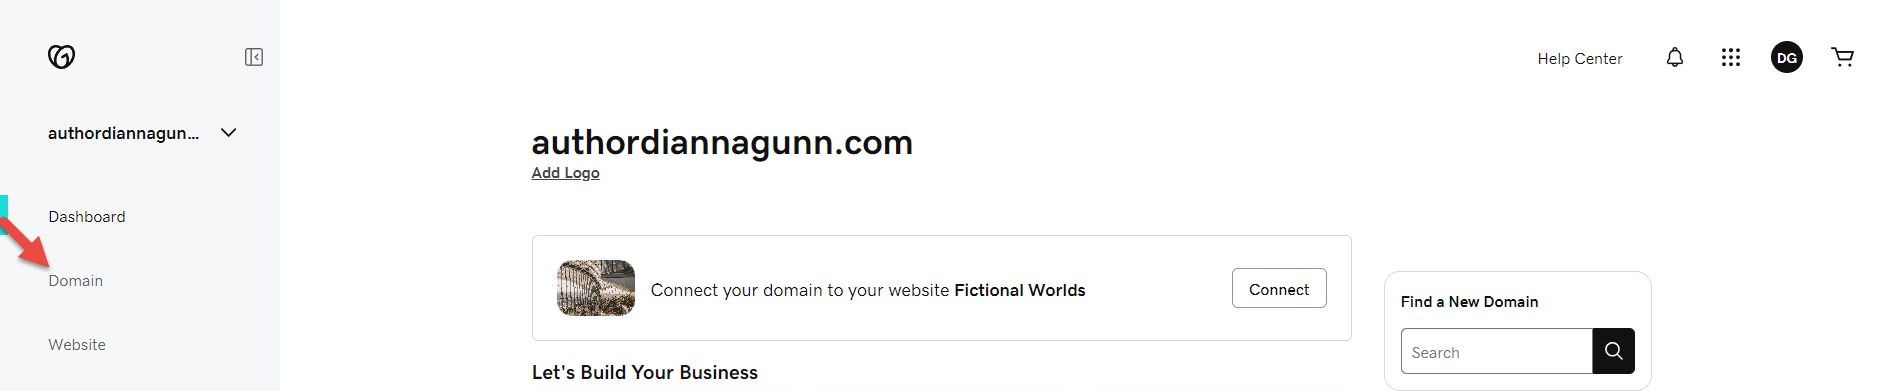 GoDaddy domain area for the "authordiannagunn.com" domain.